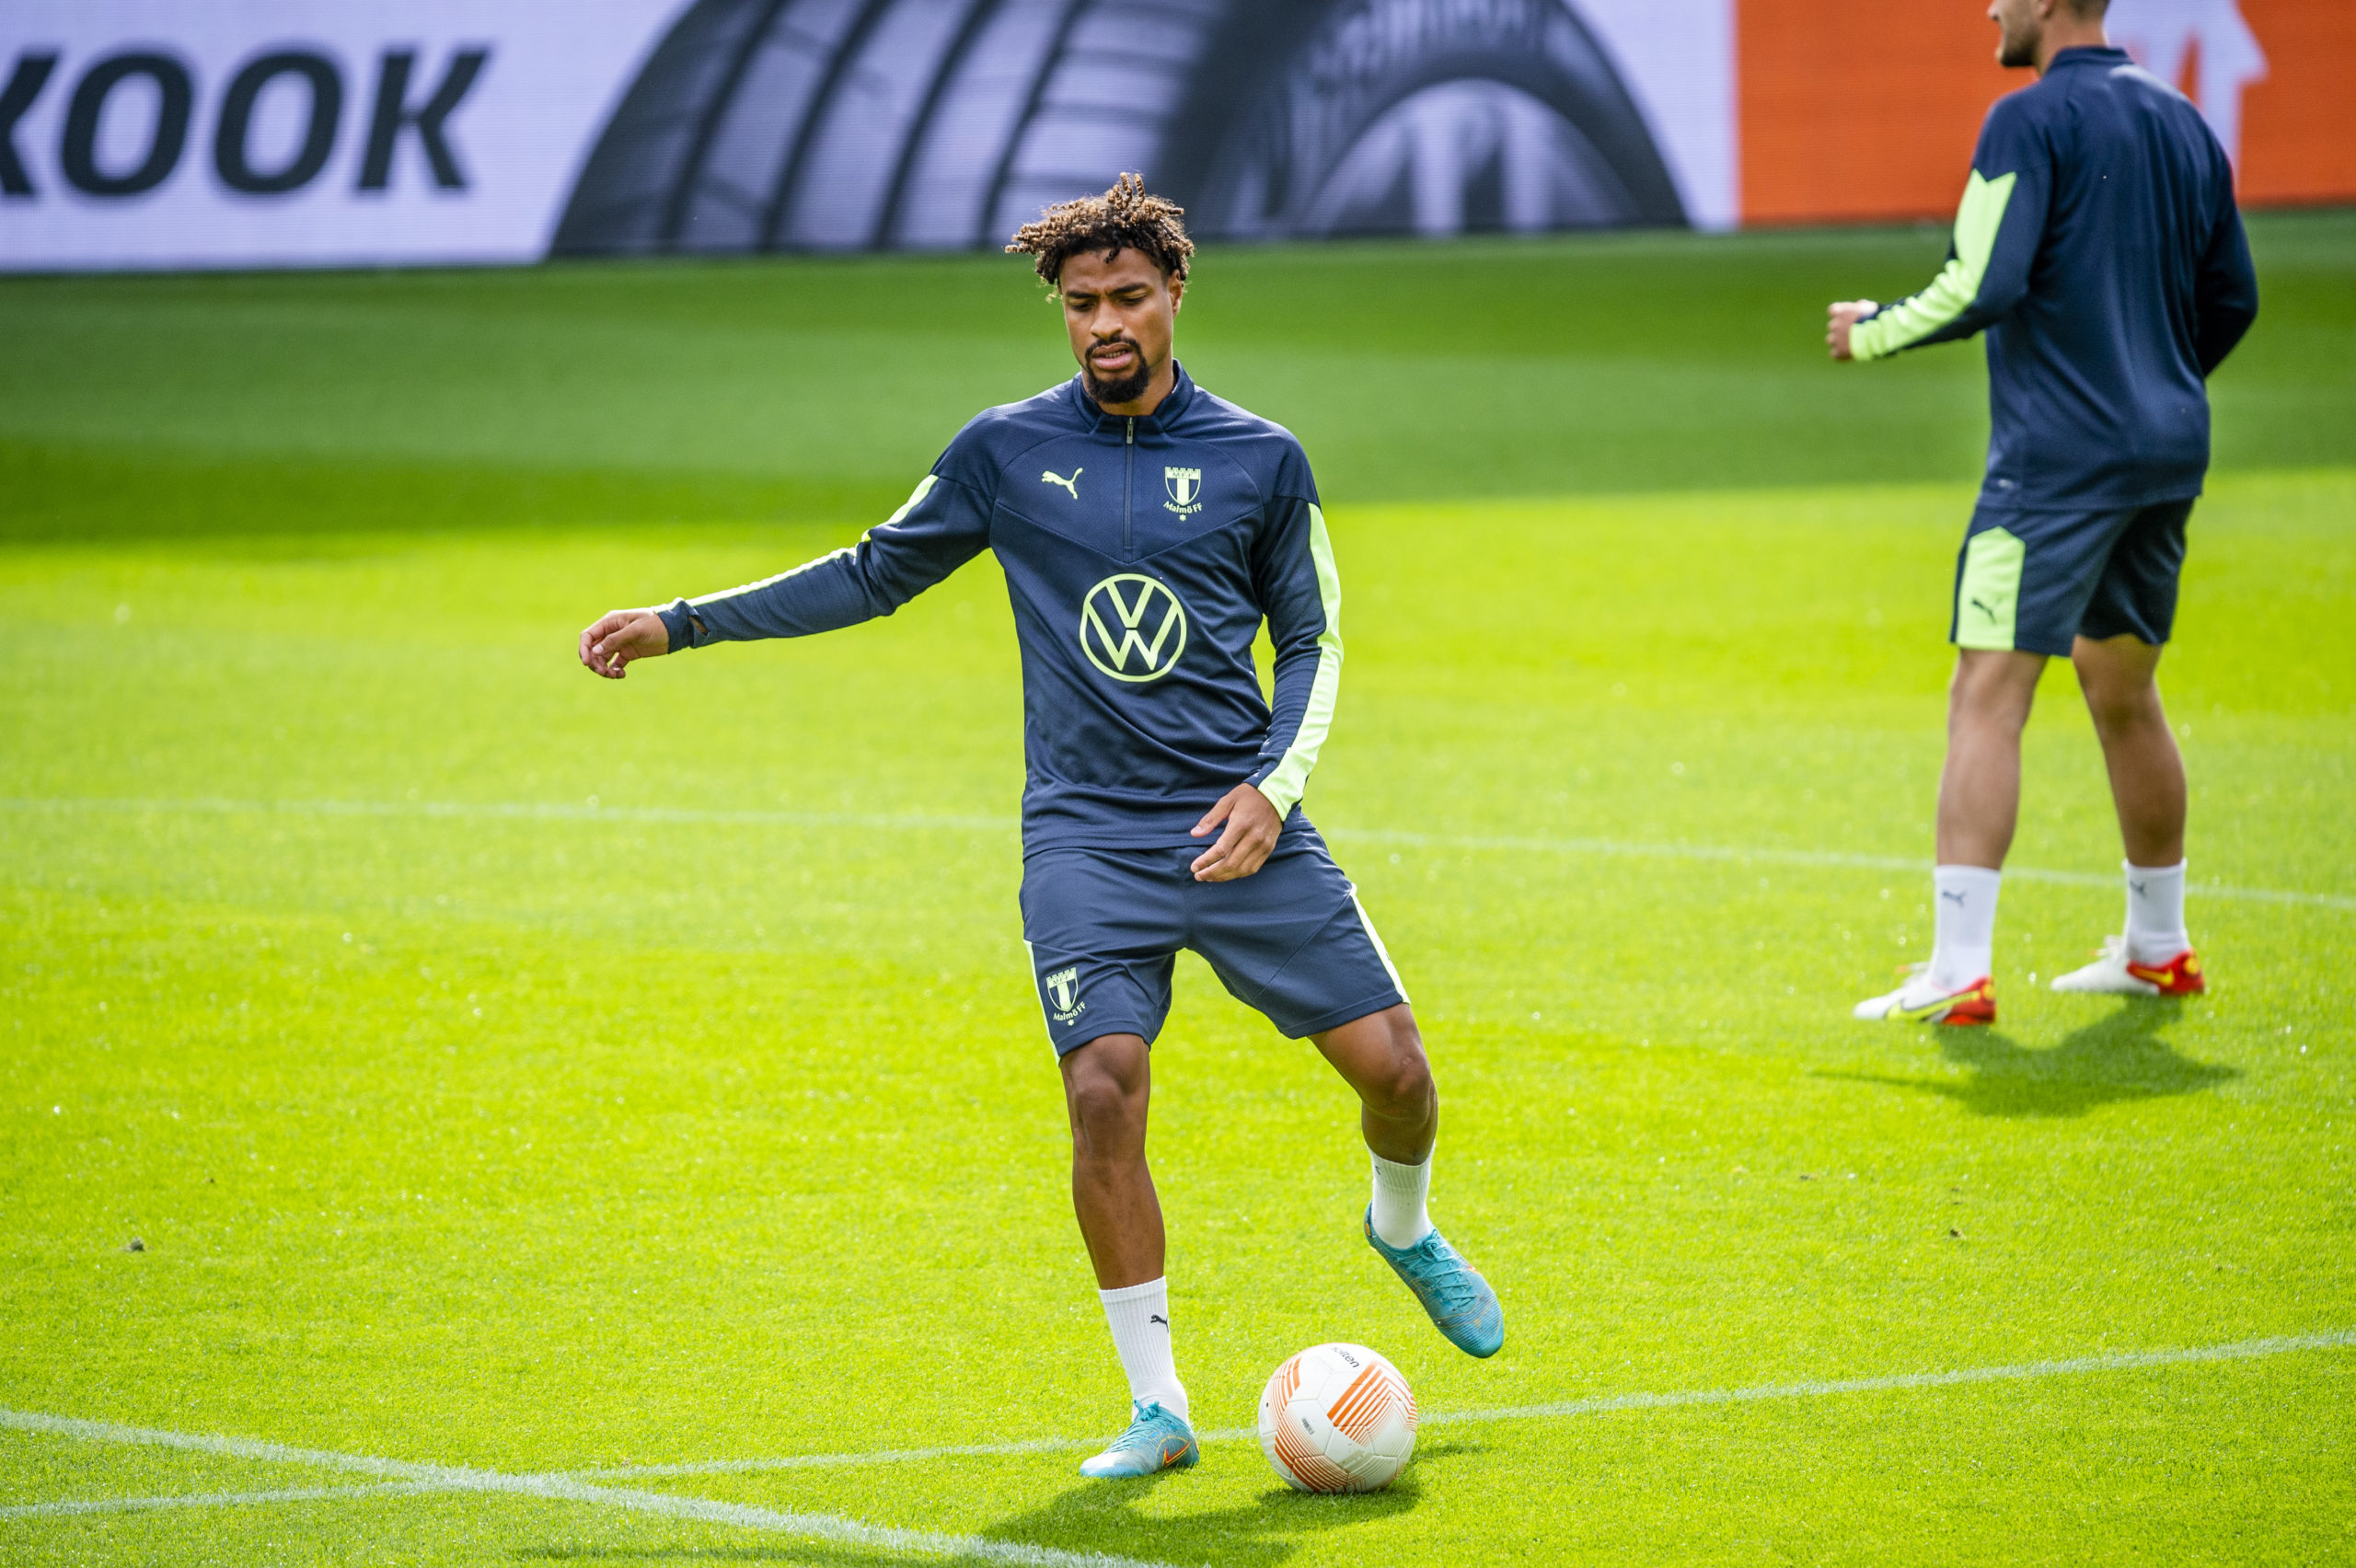 Aggiornamento infortuni a squadre maschili – Malmö FF